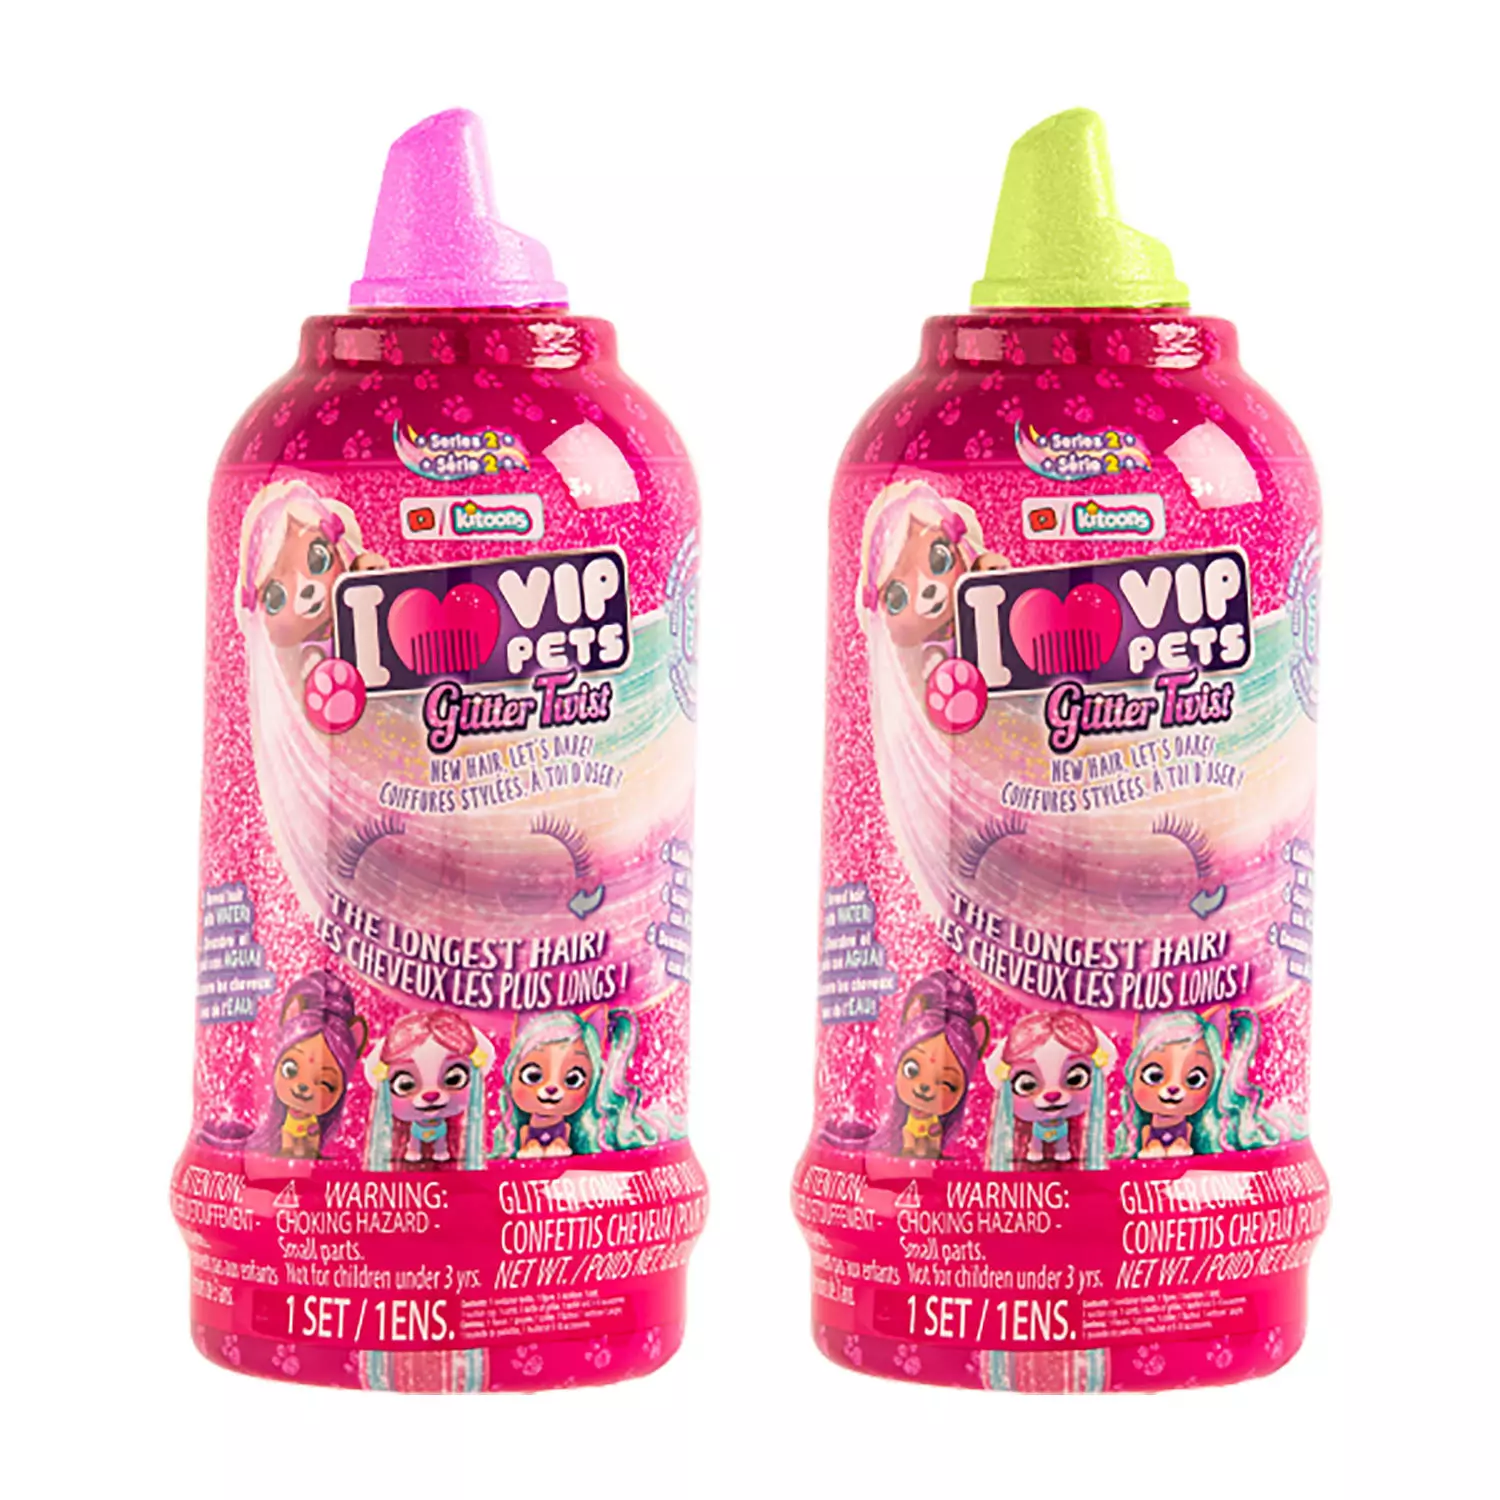 VIP Pets - Glitter Twist hair reveal doll set